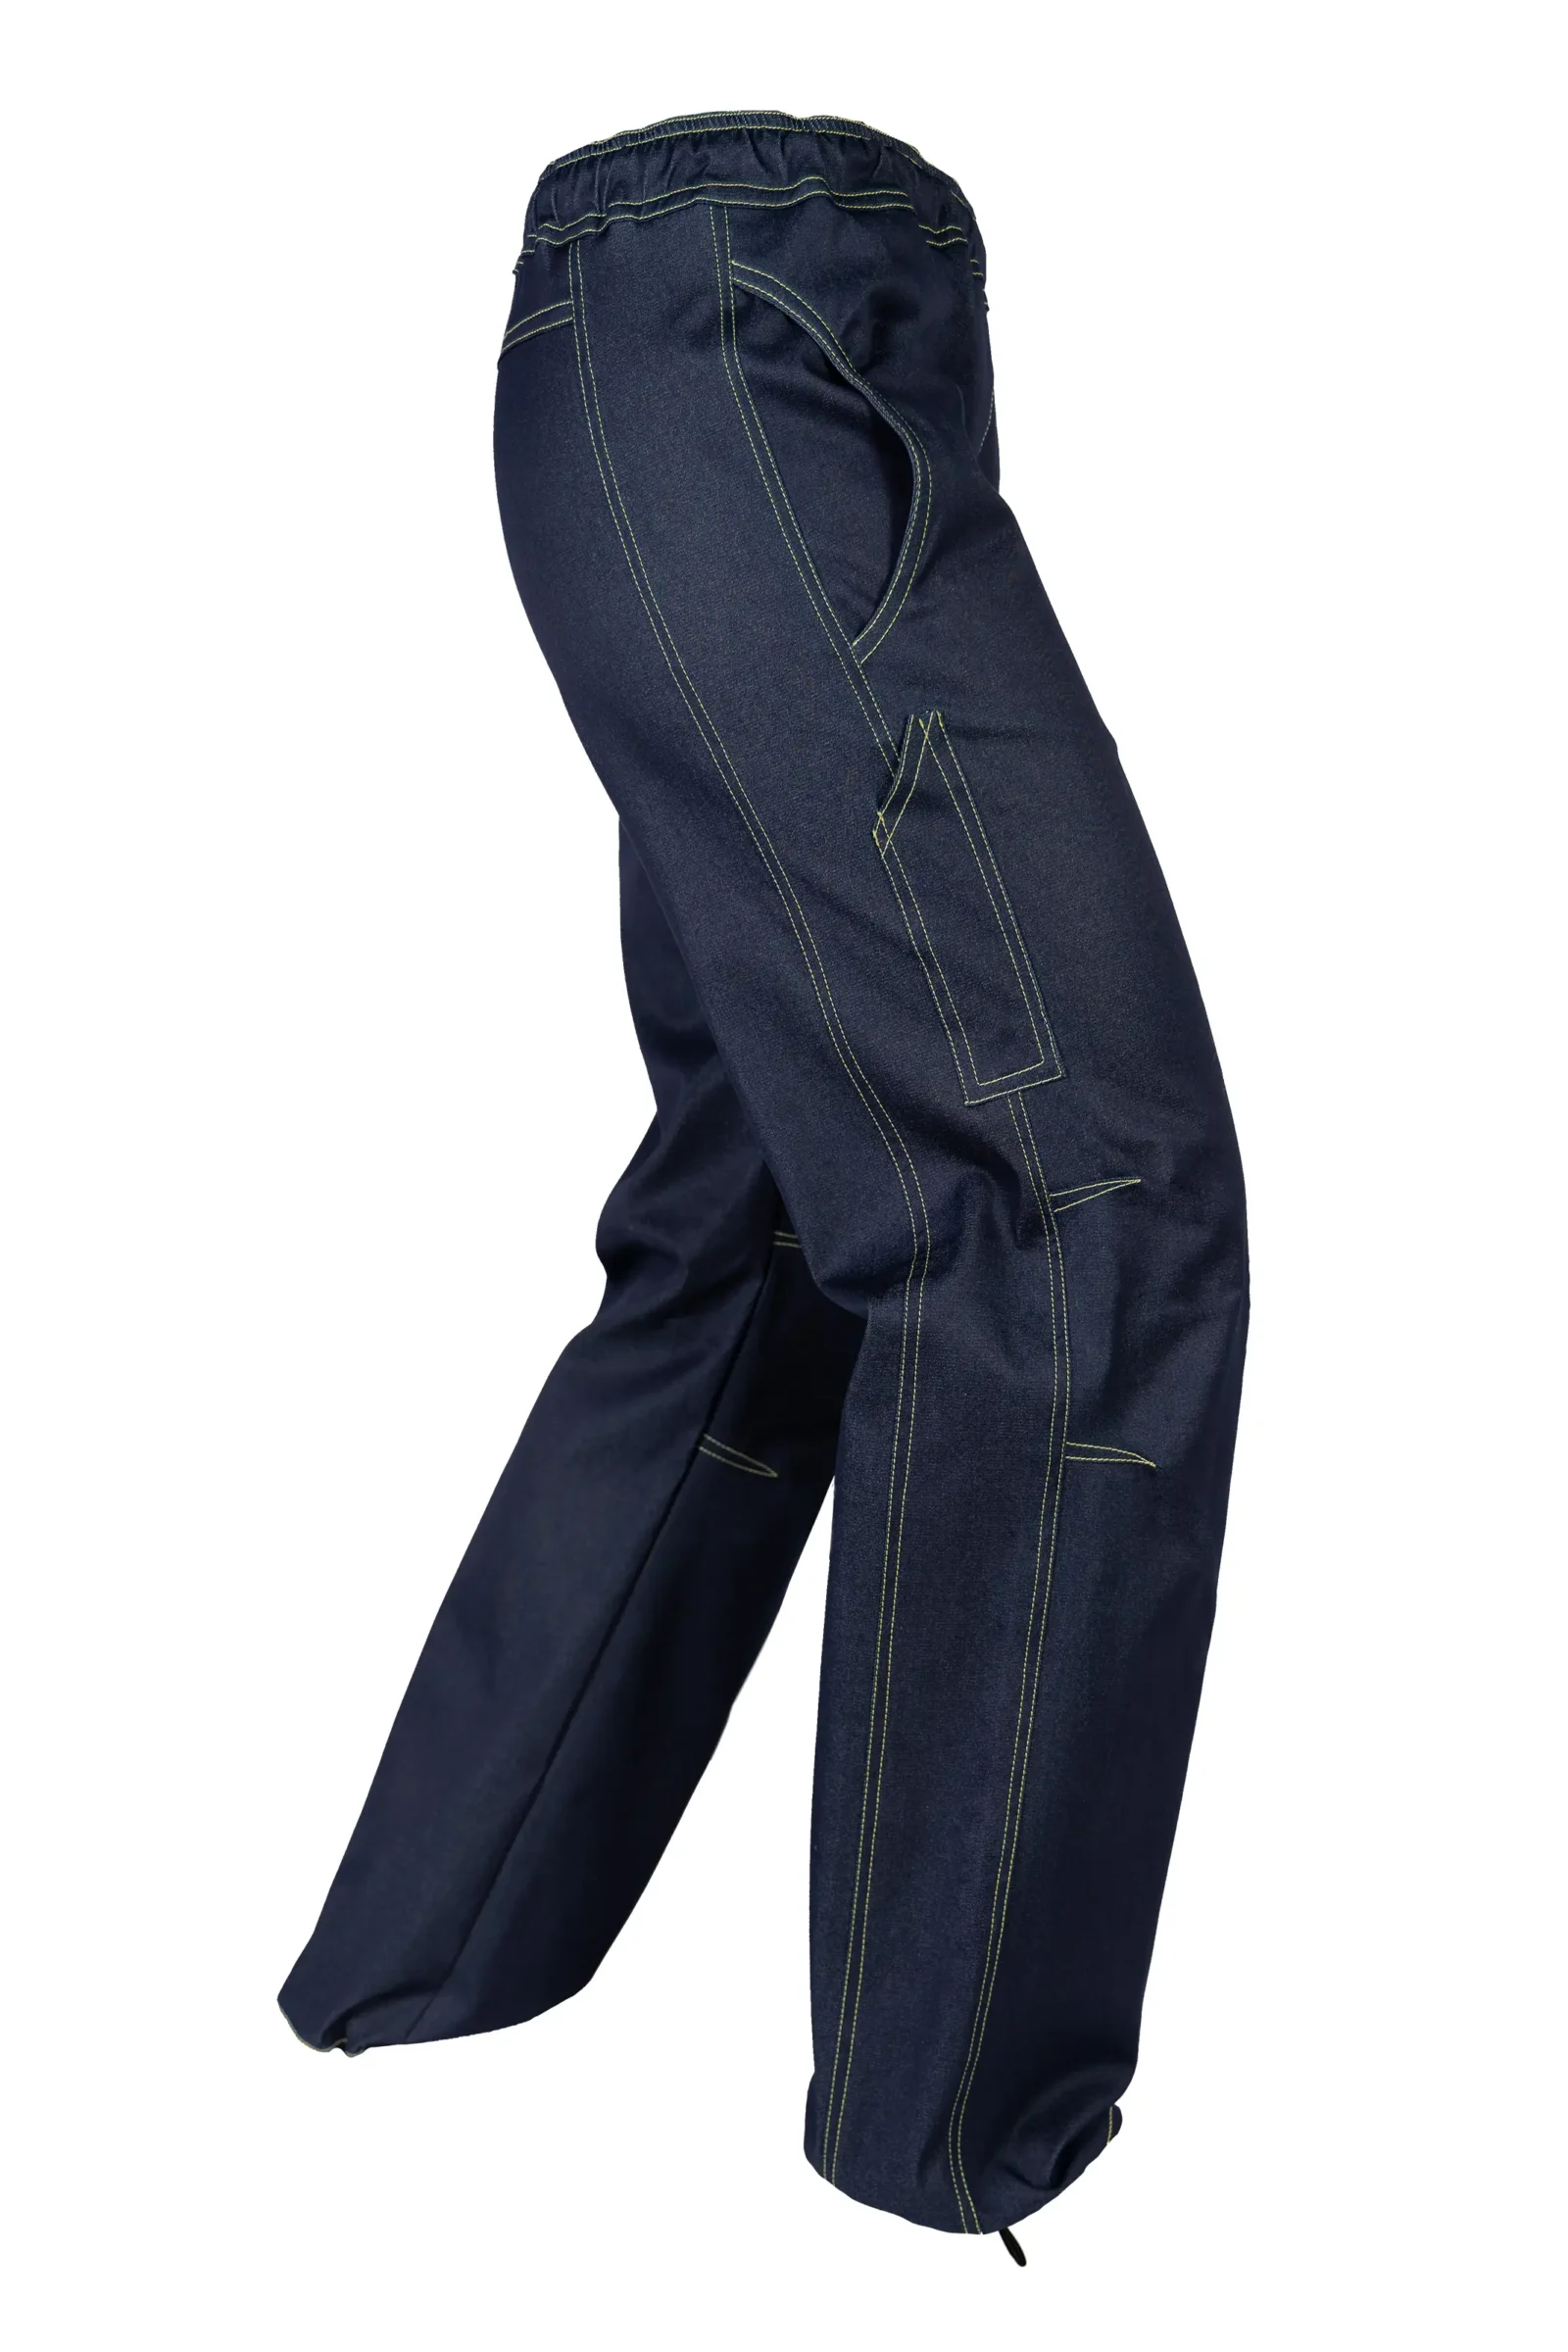 Jeans climbing da donna - denim filo giallo - VIOLET Monvic